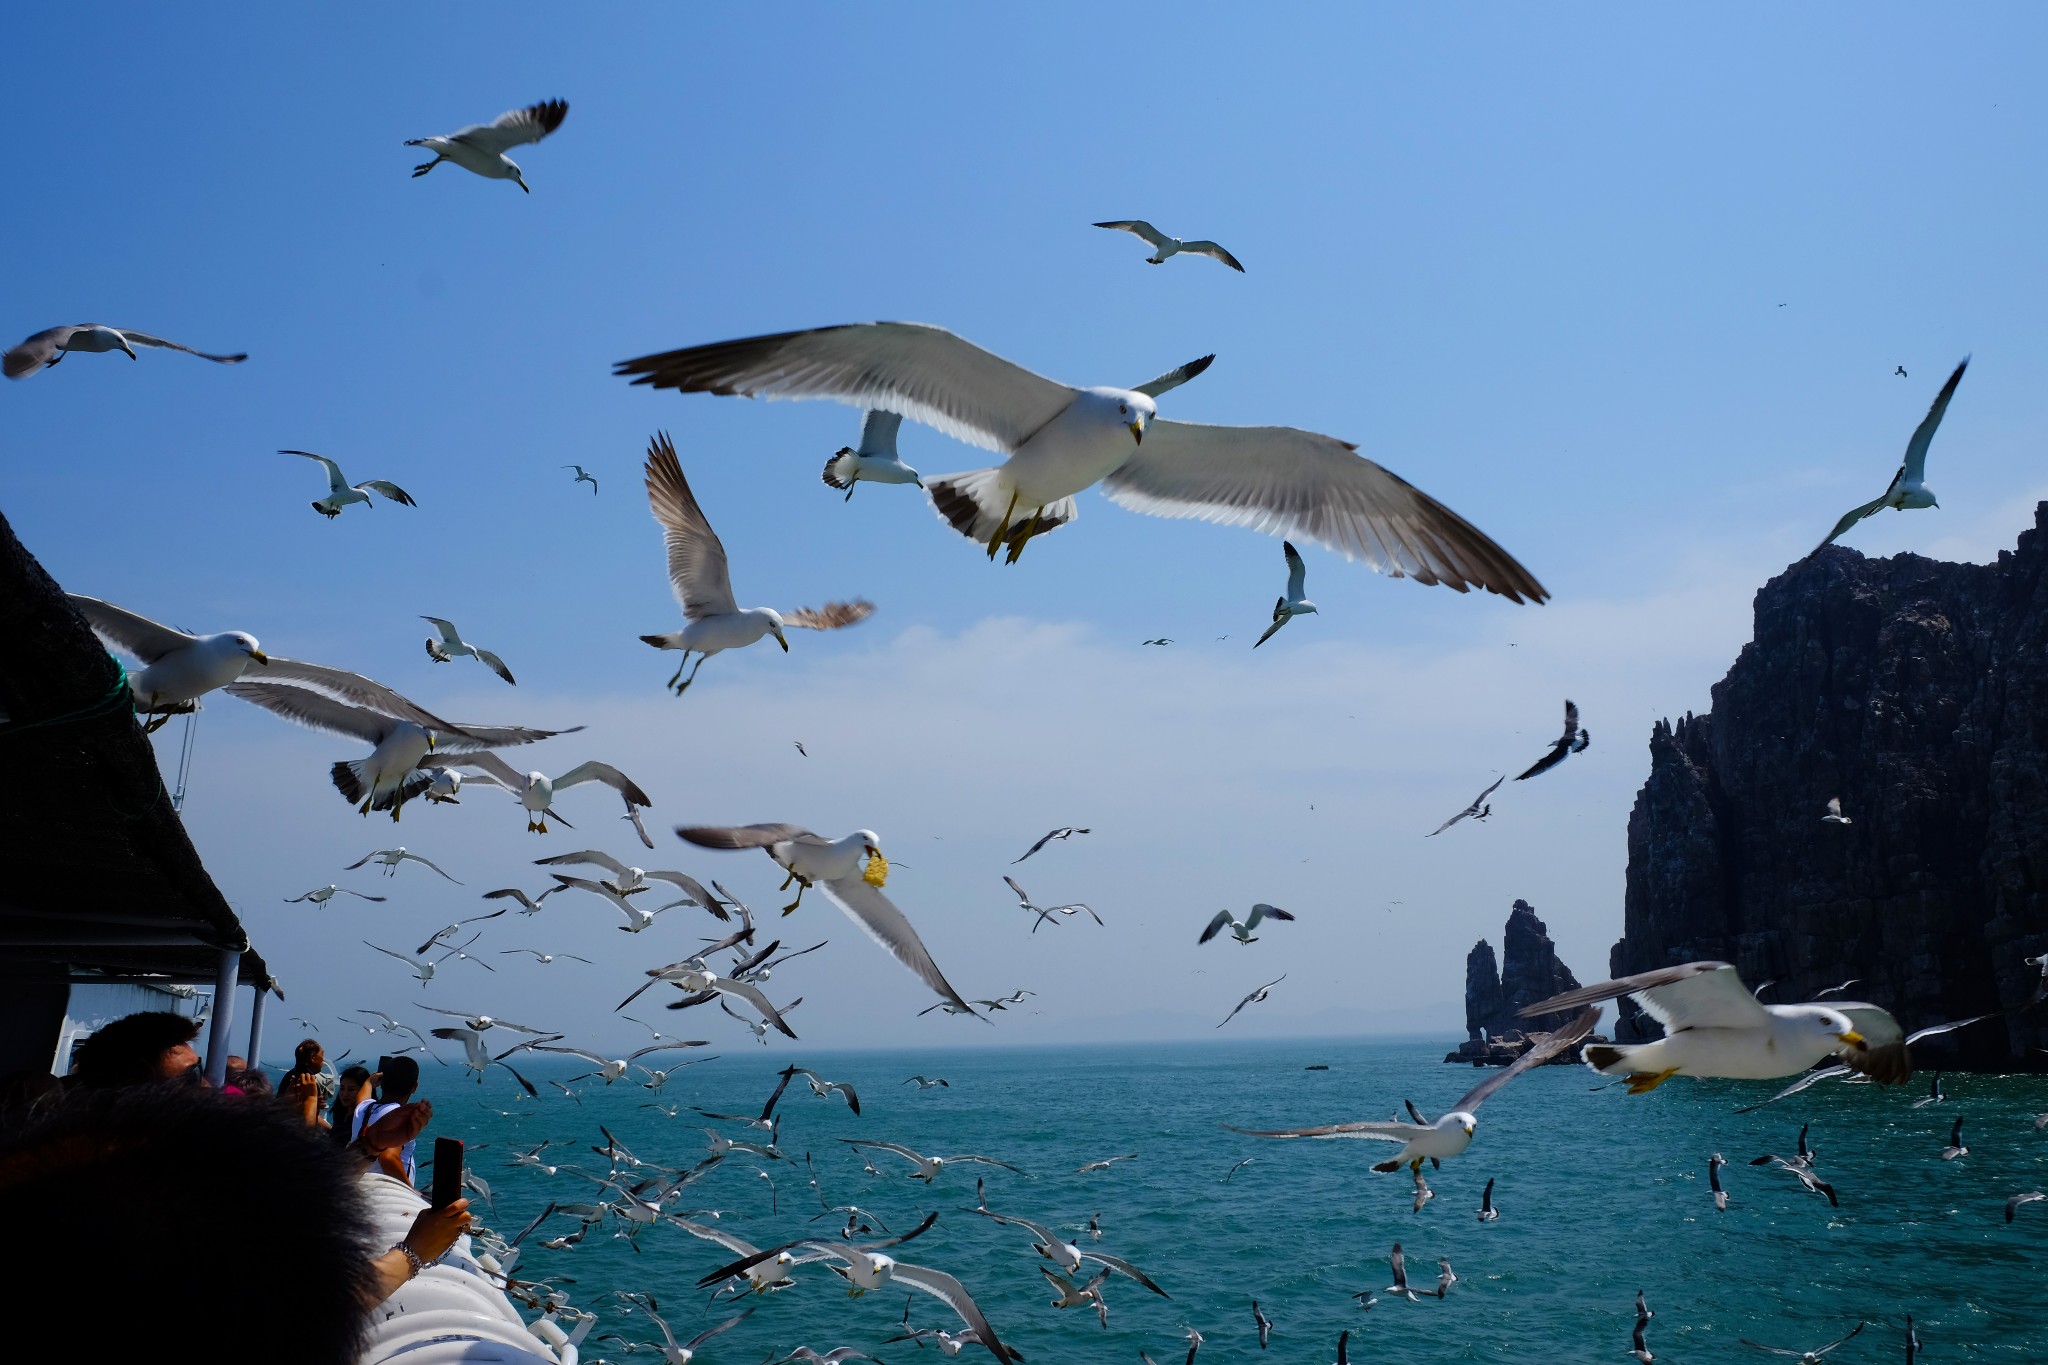 烟台长岛海上玩法之一:万鸟岛航线揭秘